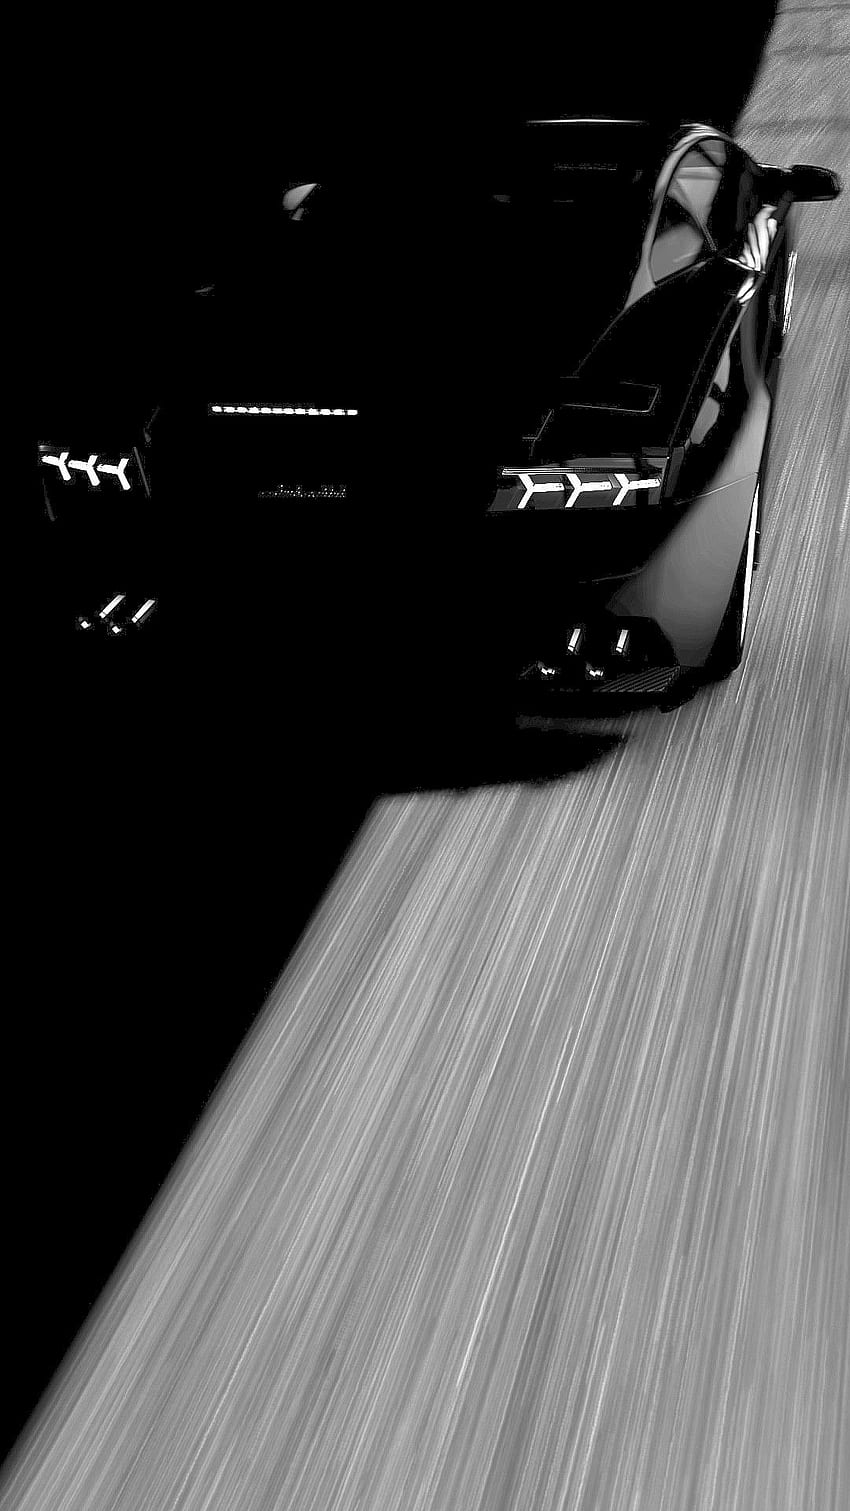 Dark Supercar . Superdeportivos, Autos y motos, Coches caros, Porsche  Amoled HD phone wallpaper | Pxfuel